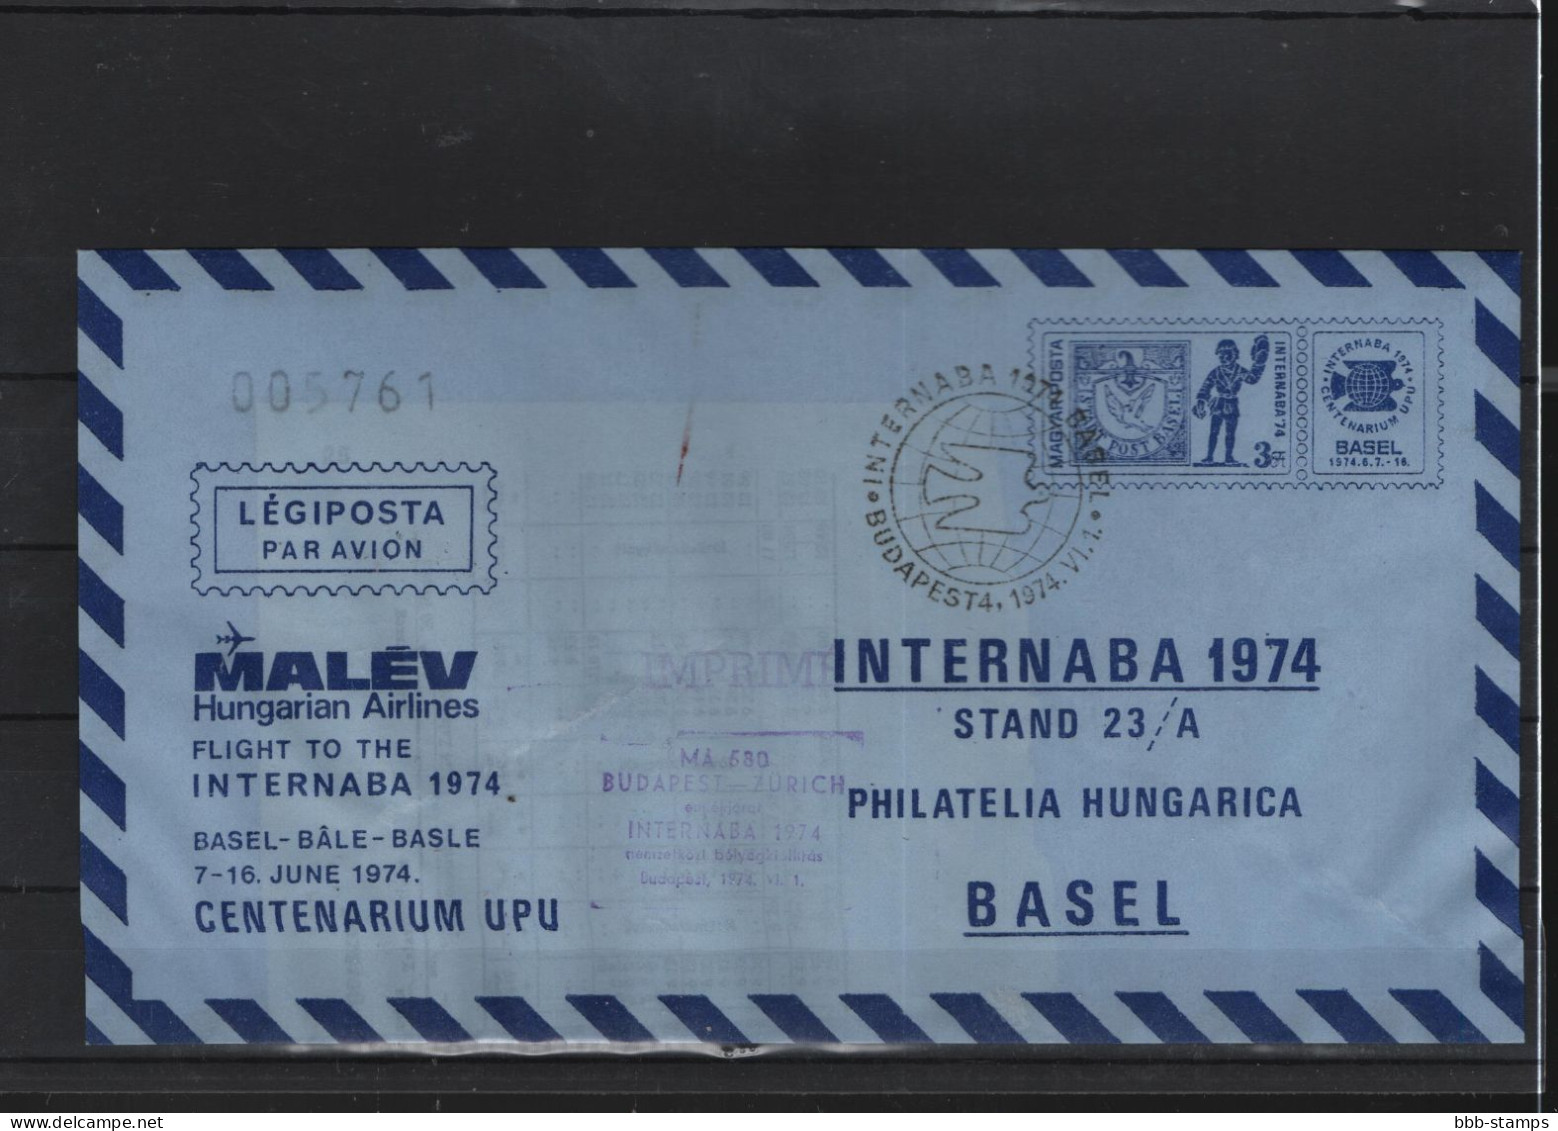 Schweiz Luftpost FFC Malev 4.4.1972 Budapest - Basel - Eerste Vluchten